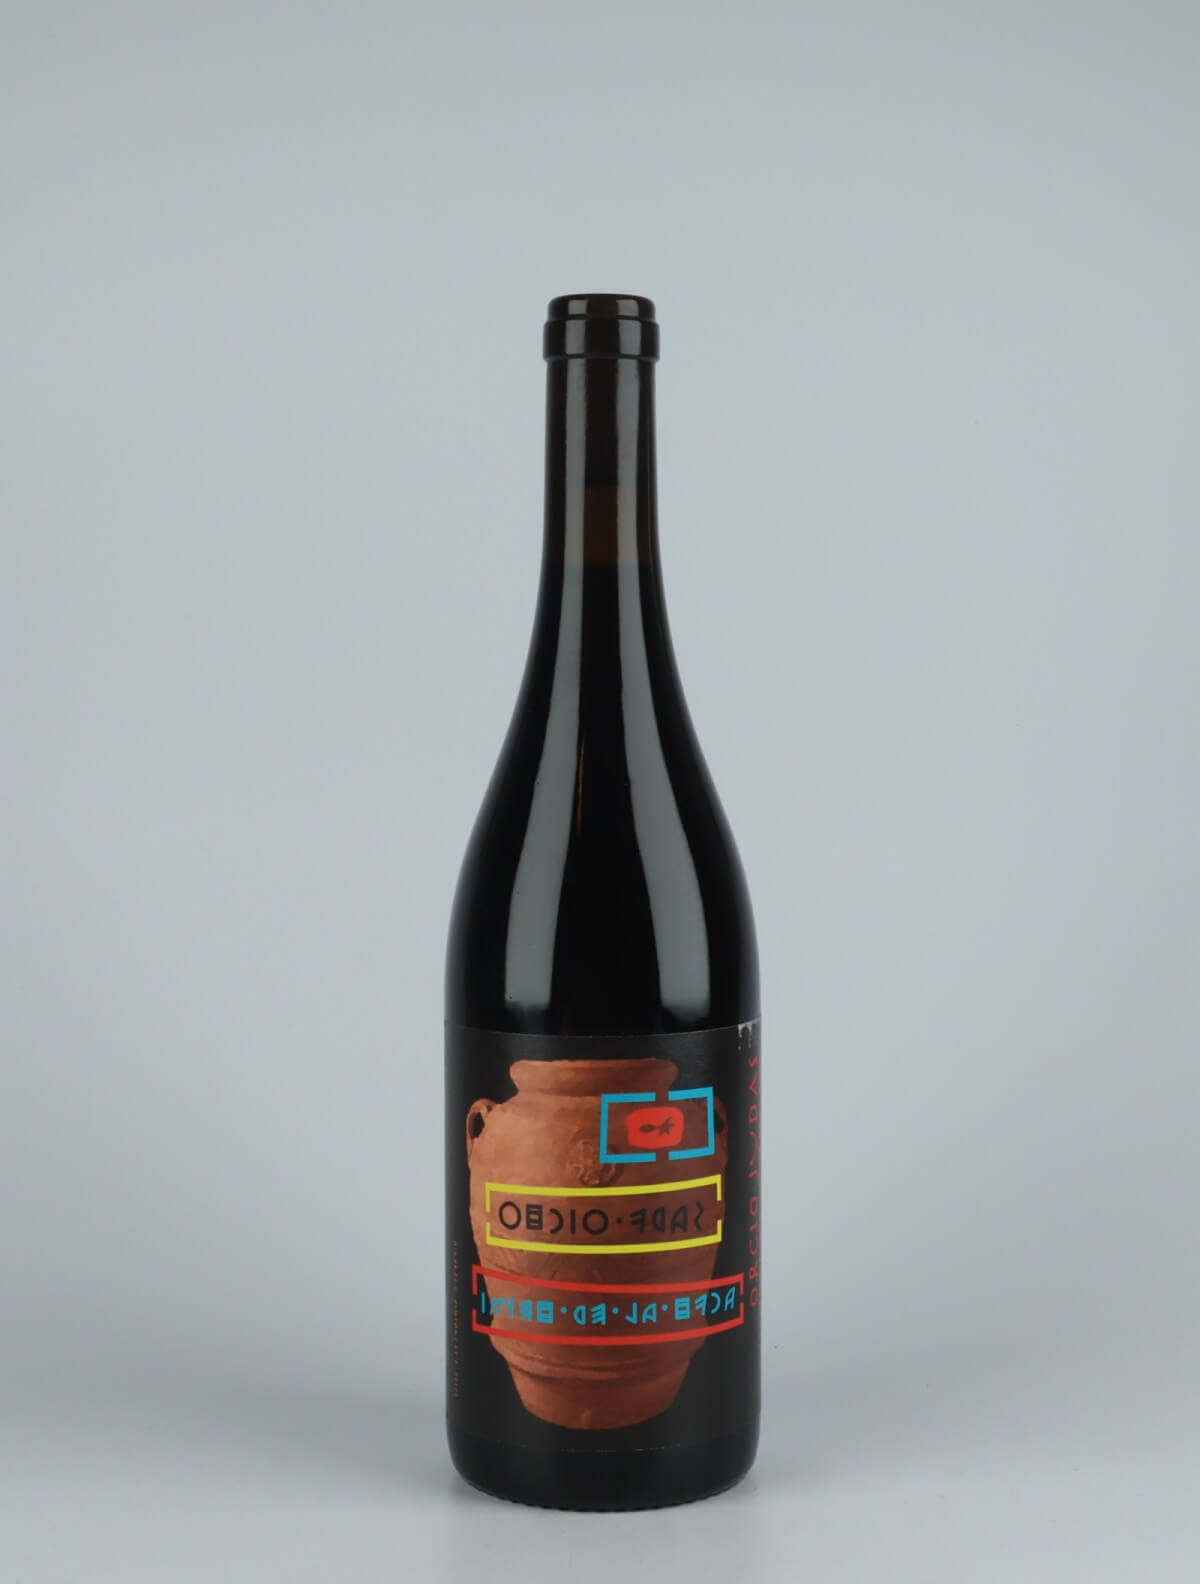 En flaske 2020 Orcio Judas Rødvin fra Vinyer de la Ruca, Rousillon i Frankrig